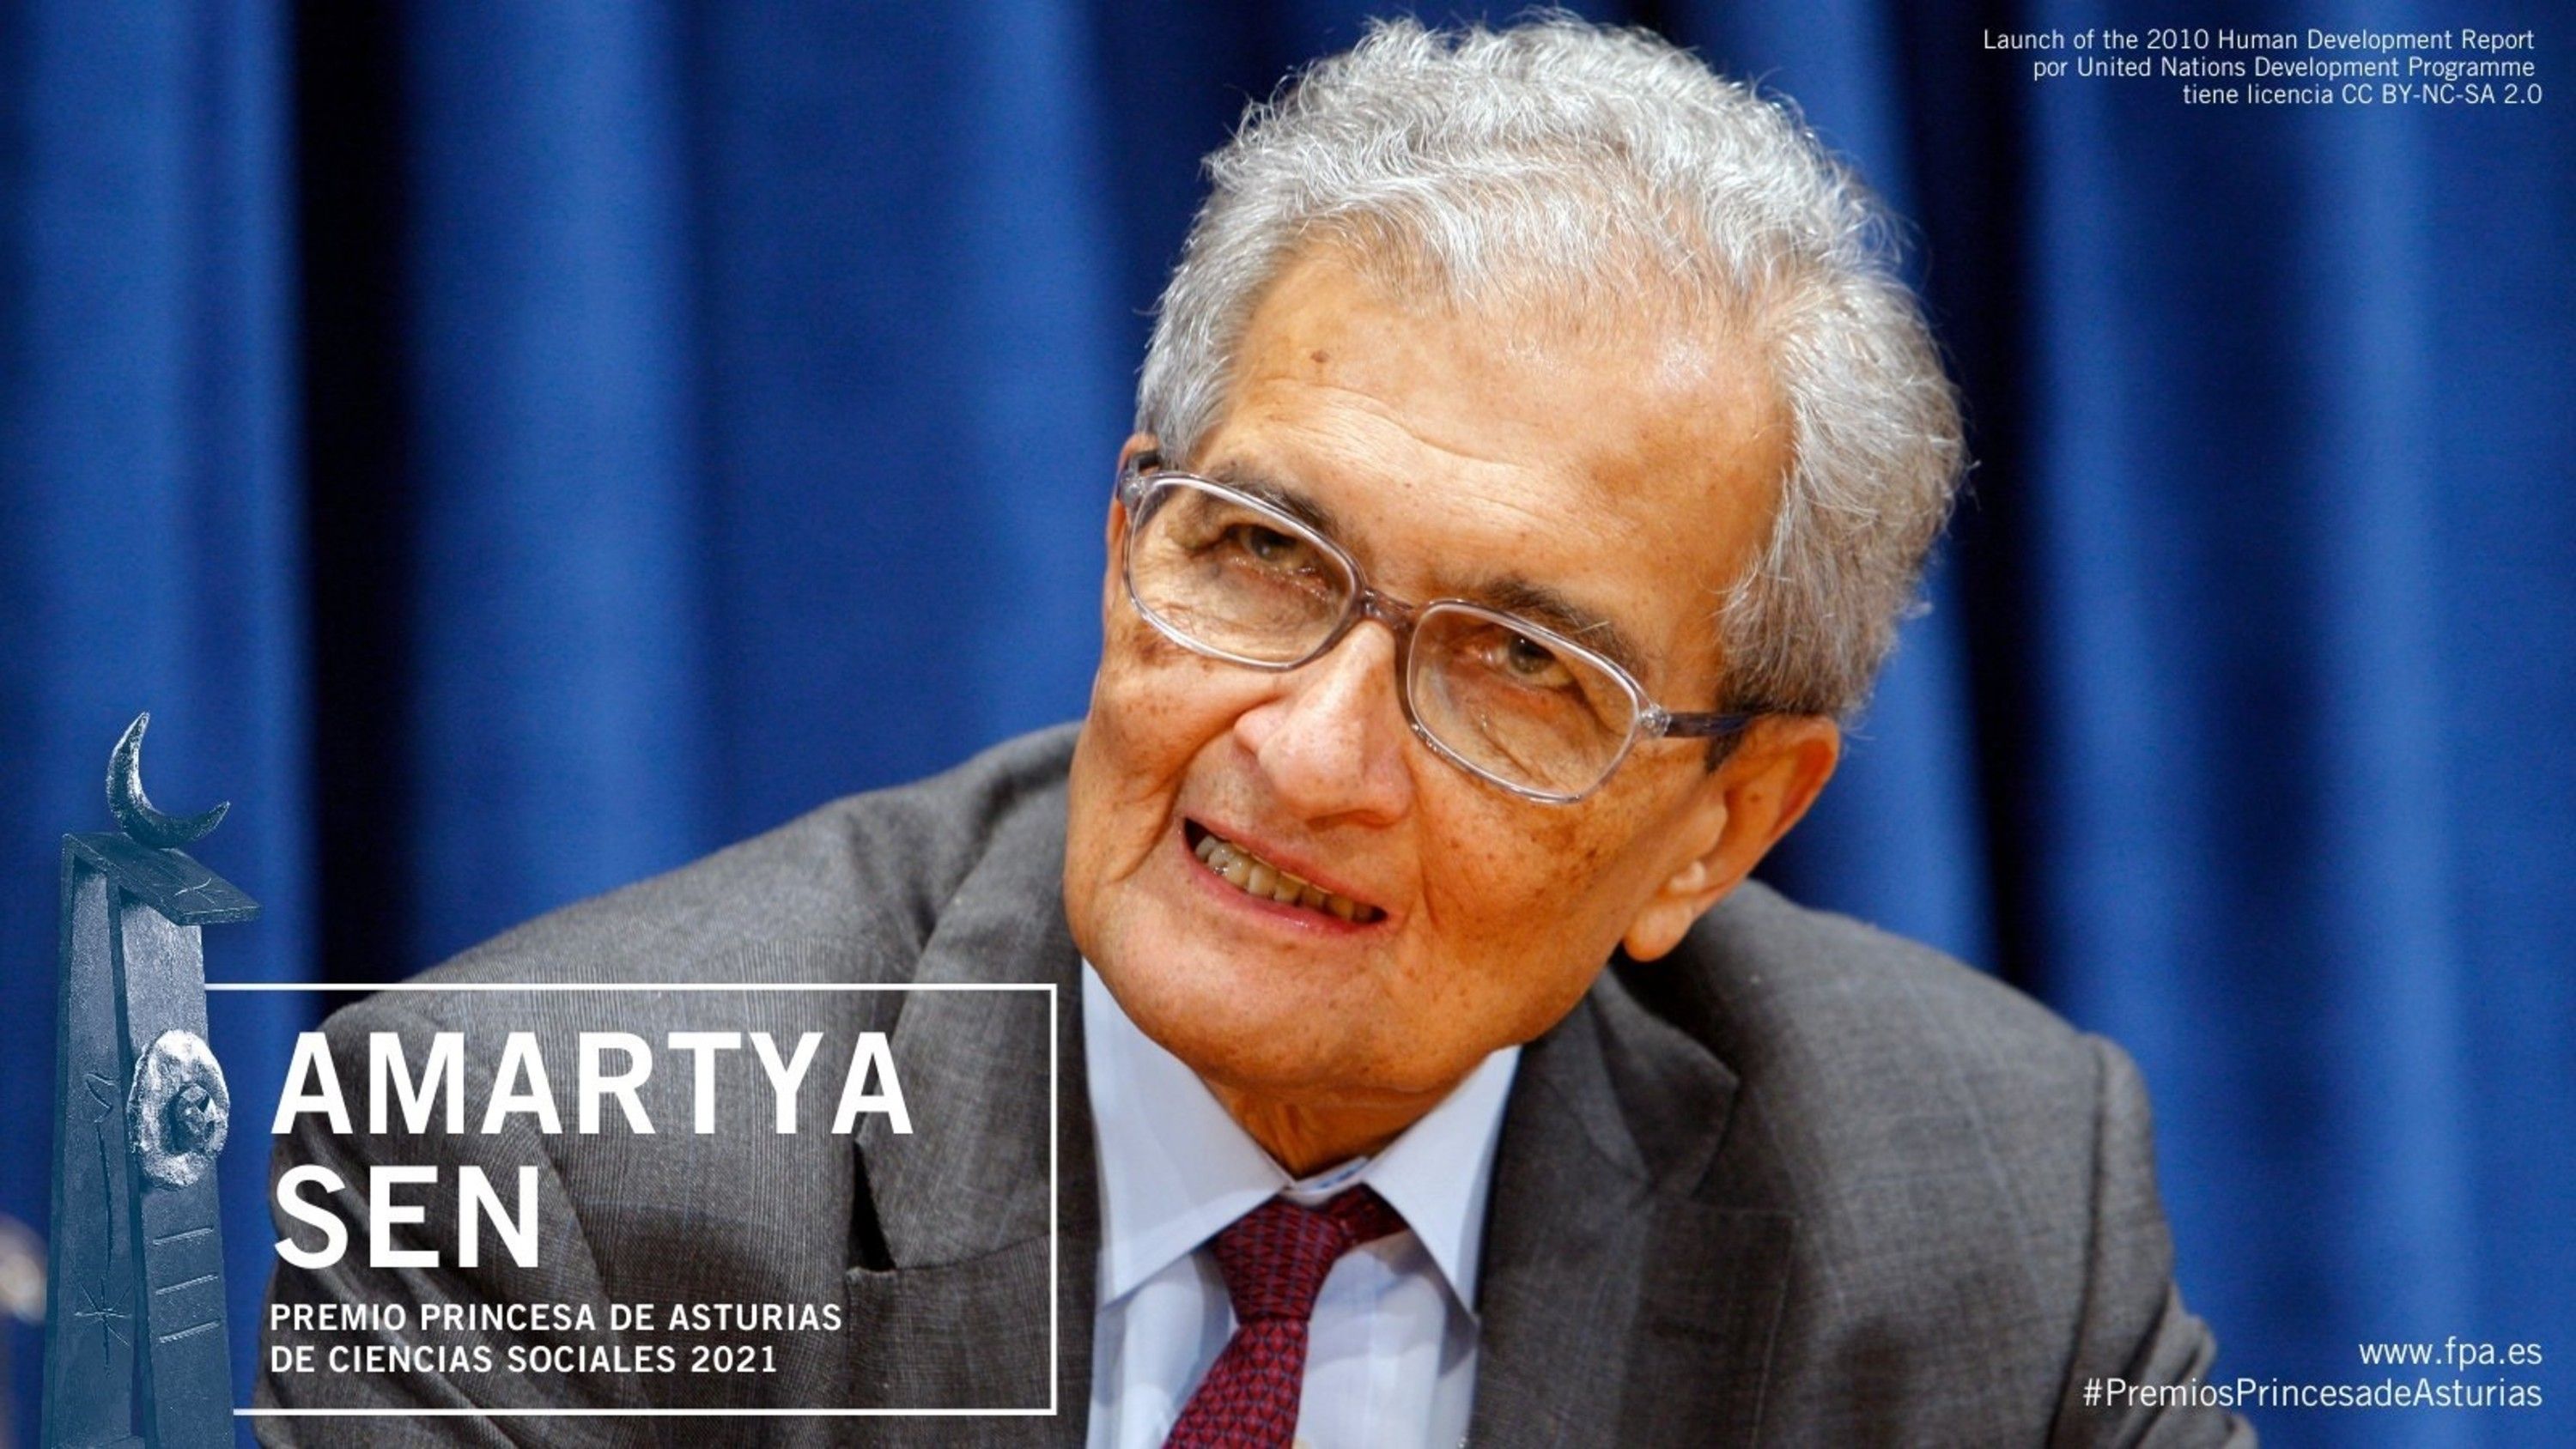 El economista Amartya Sen, Premio Princesa de Asturias de Ciencias Sociales 2021